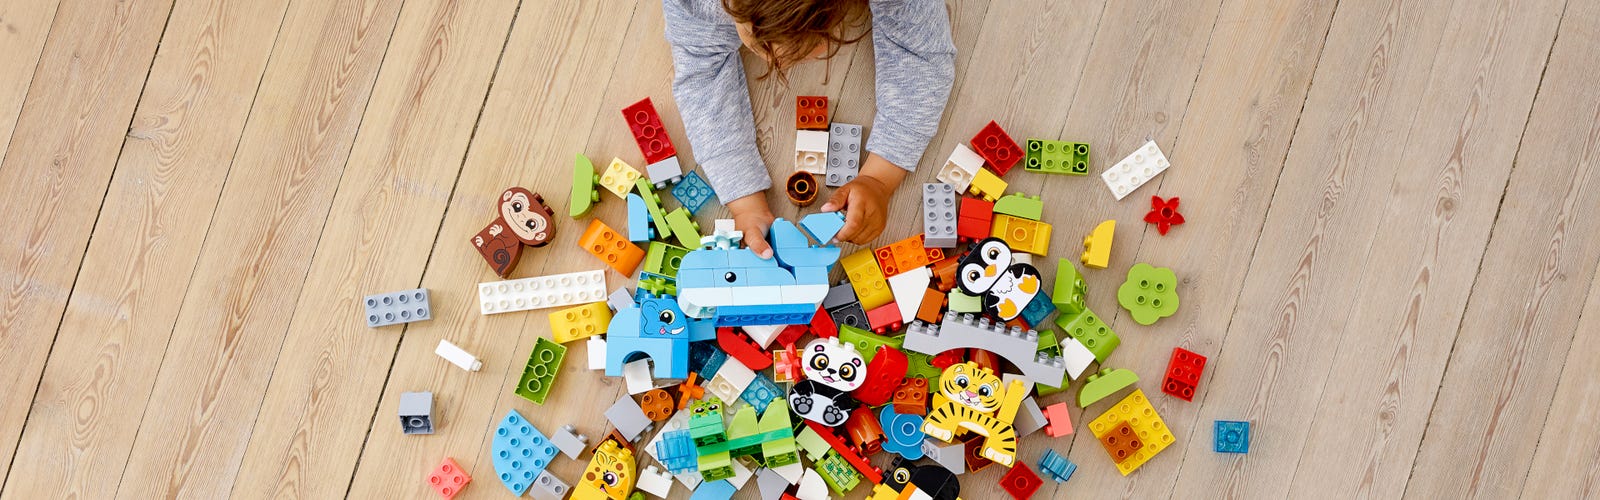 Les meilleurs Lego Duplo pour inventer des histoires